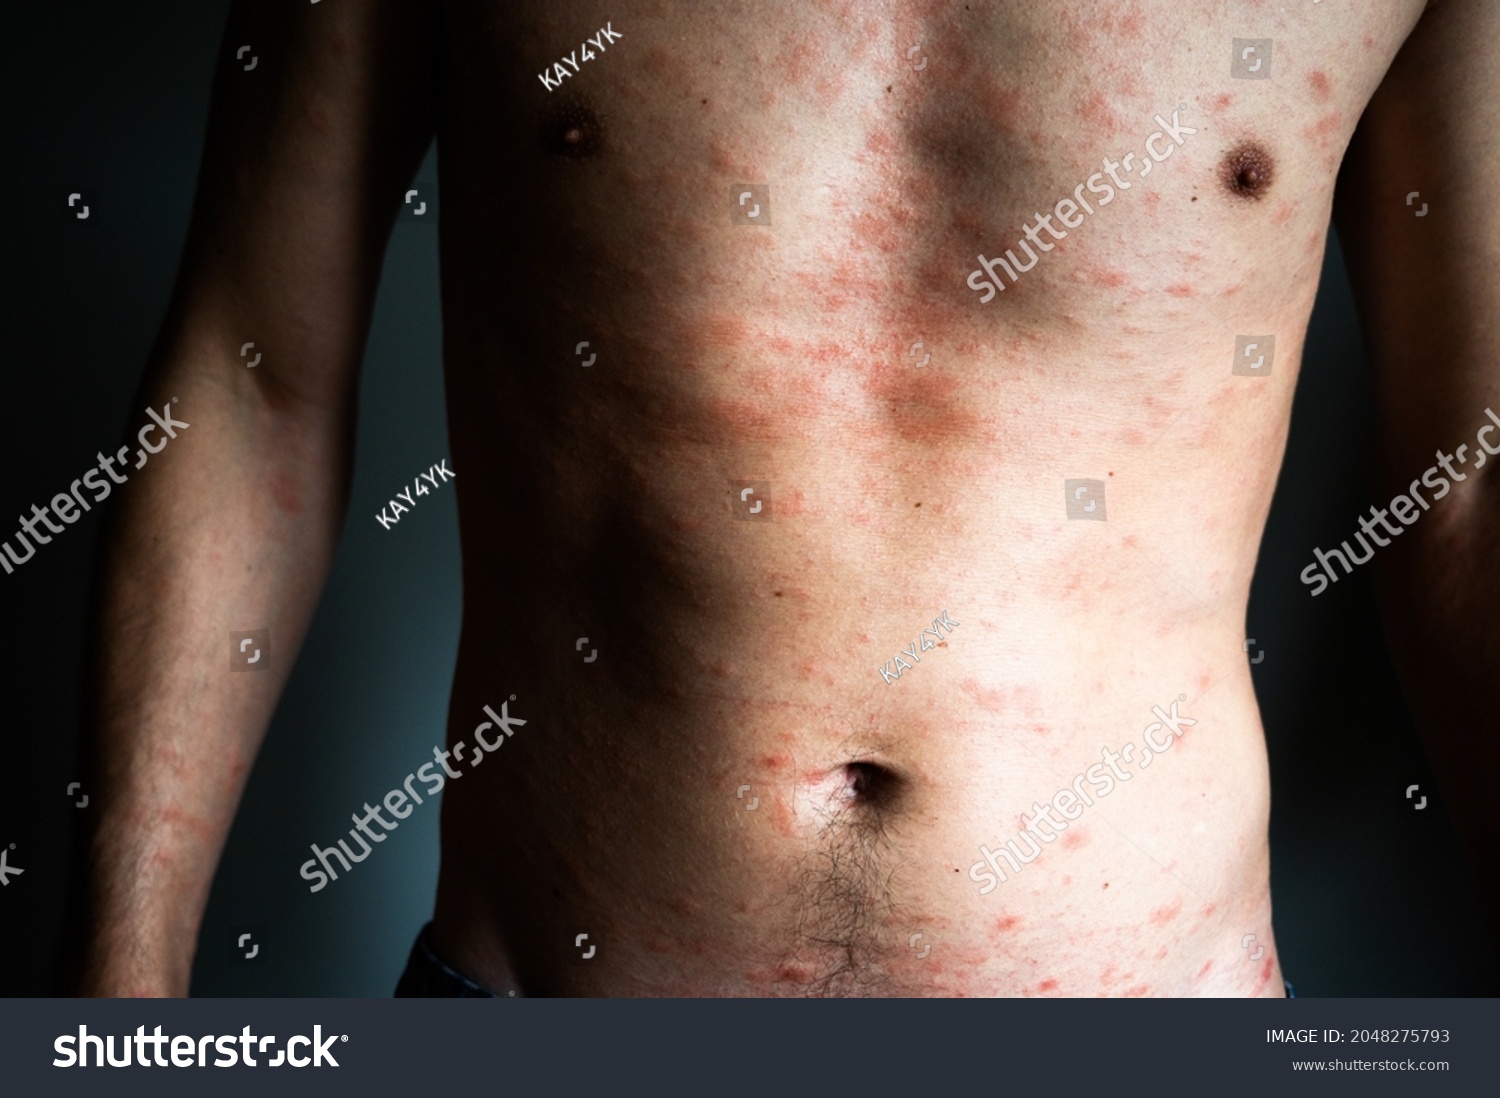 Skin Imperfection Naked Man Skin Allergy Stock Photo Shutterstock